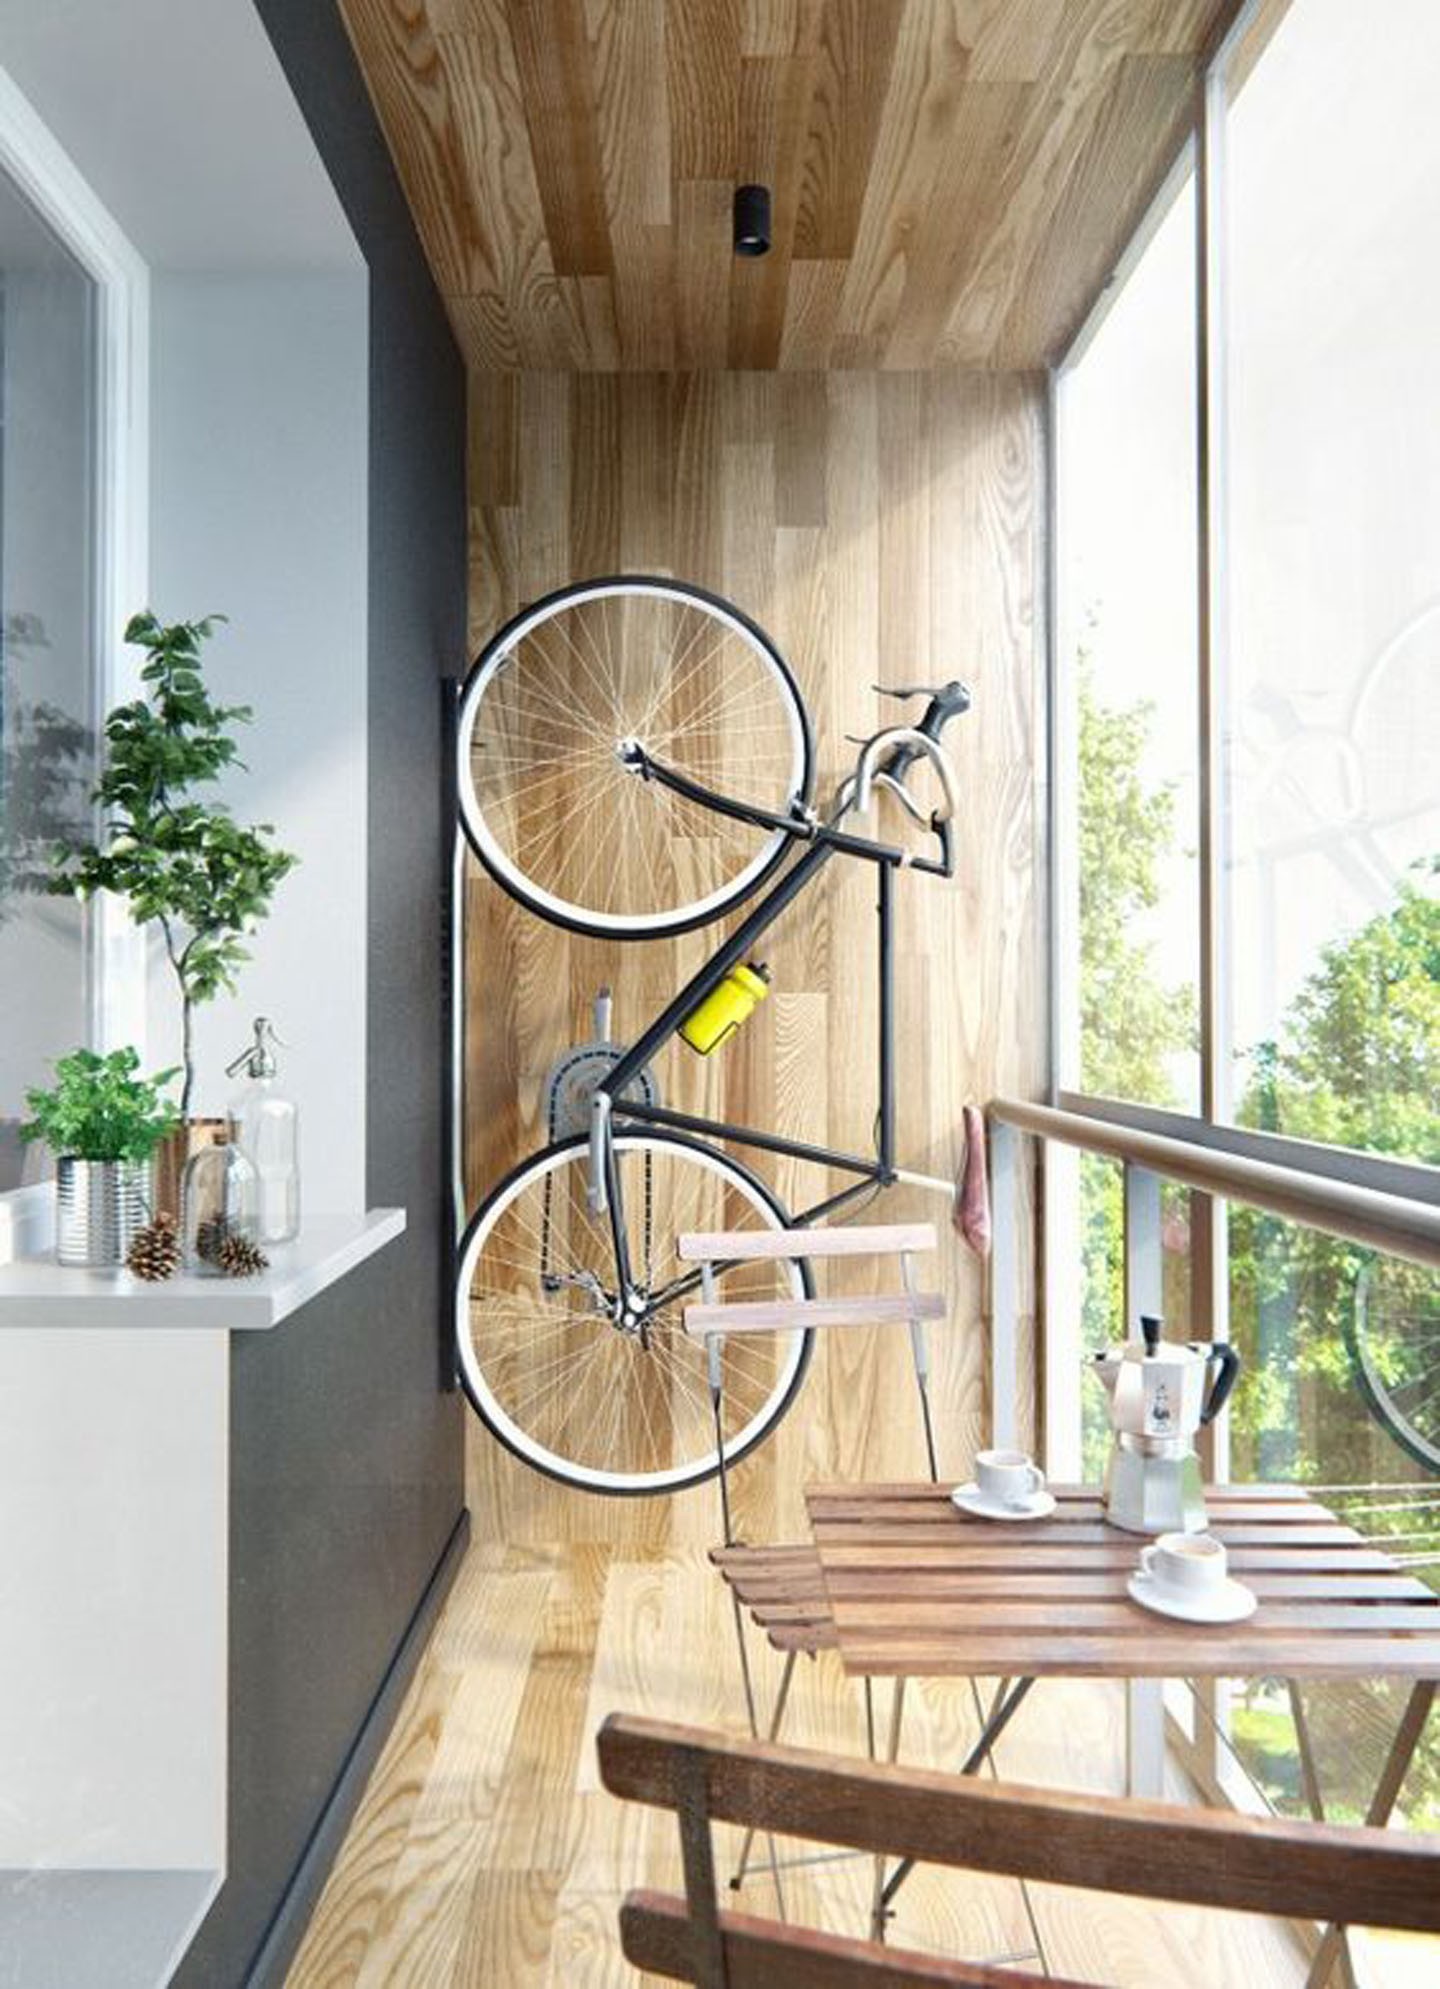 ideias para usar bike no décor (Foto: divulgação)